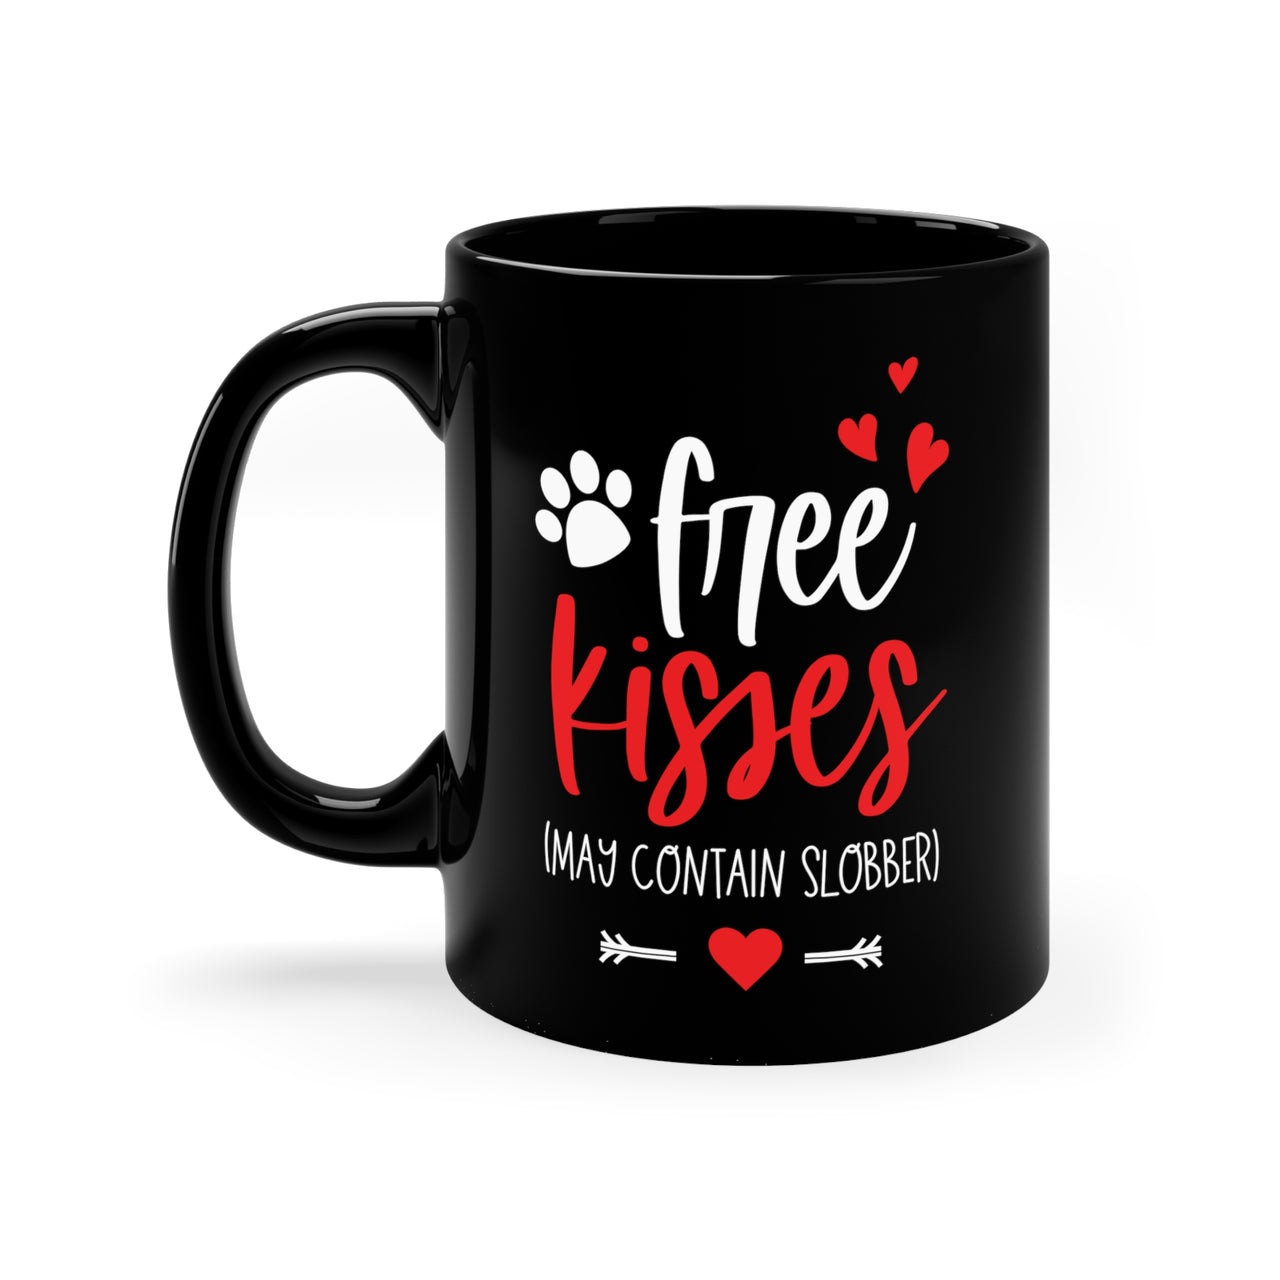 Free Kisses 💋 May Contain Slobber 💋 11oz Black Mug